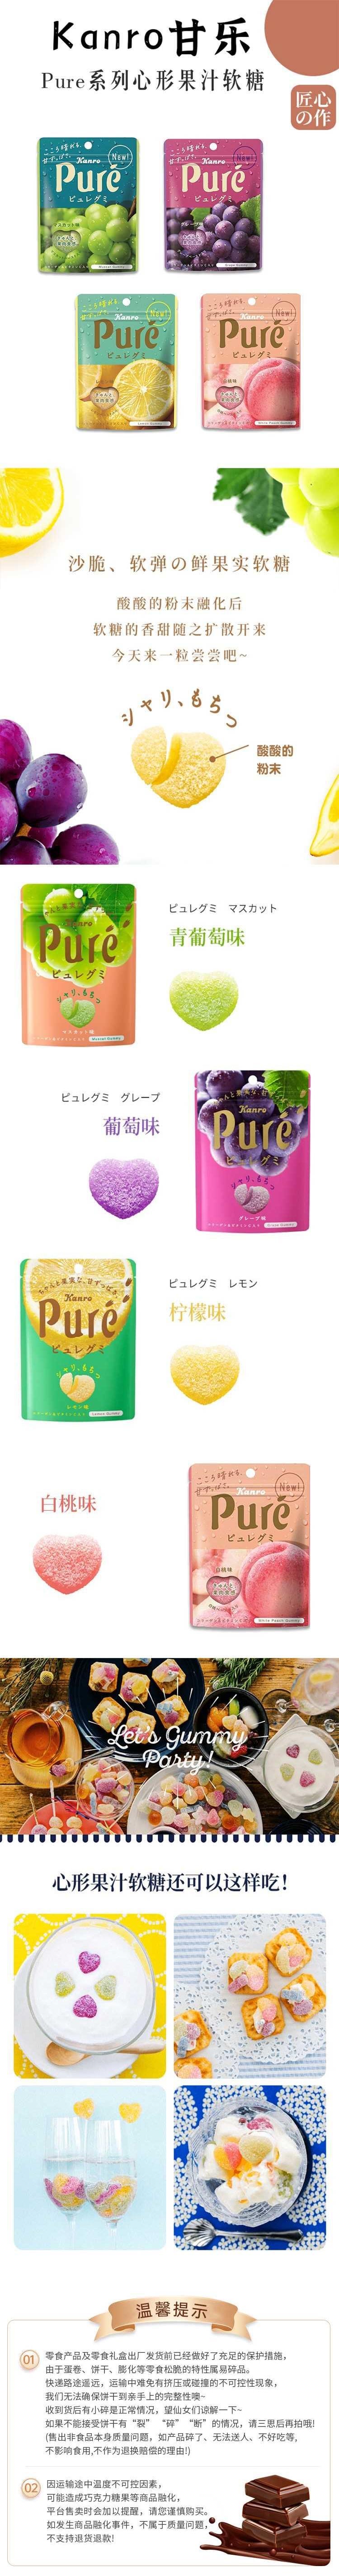 【日本直邮】KANRO甘乐 Pure果肉果汁软糖 56g 柠檬味